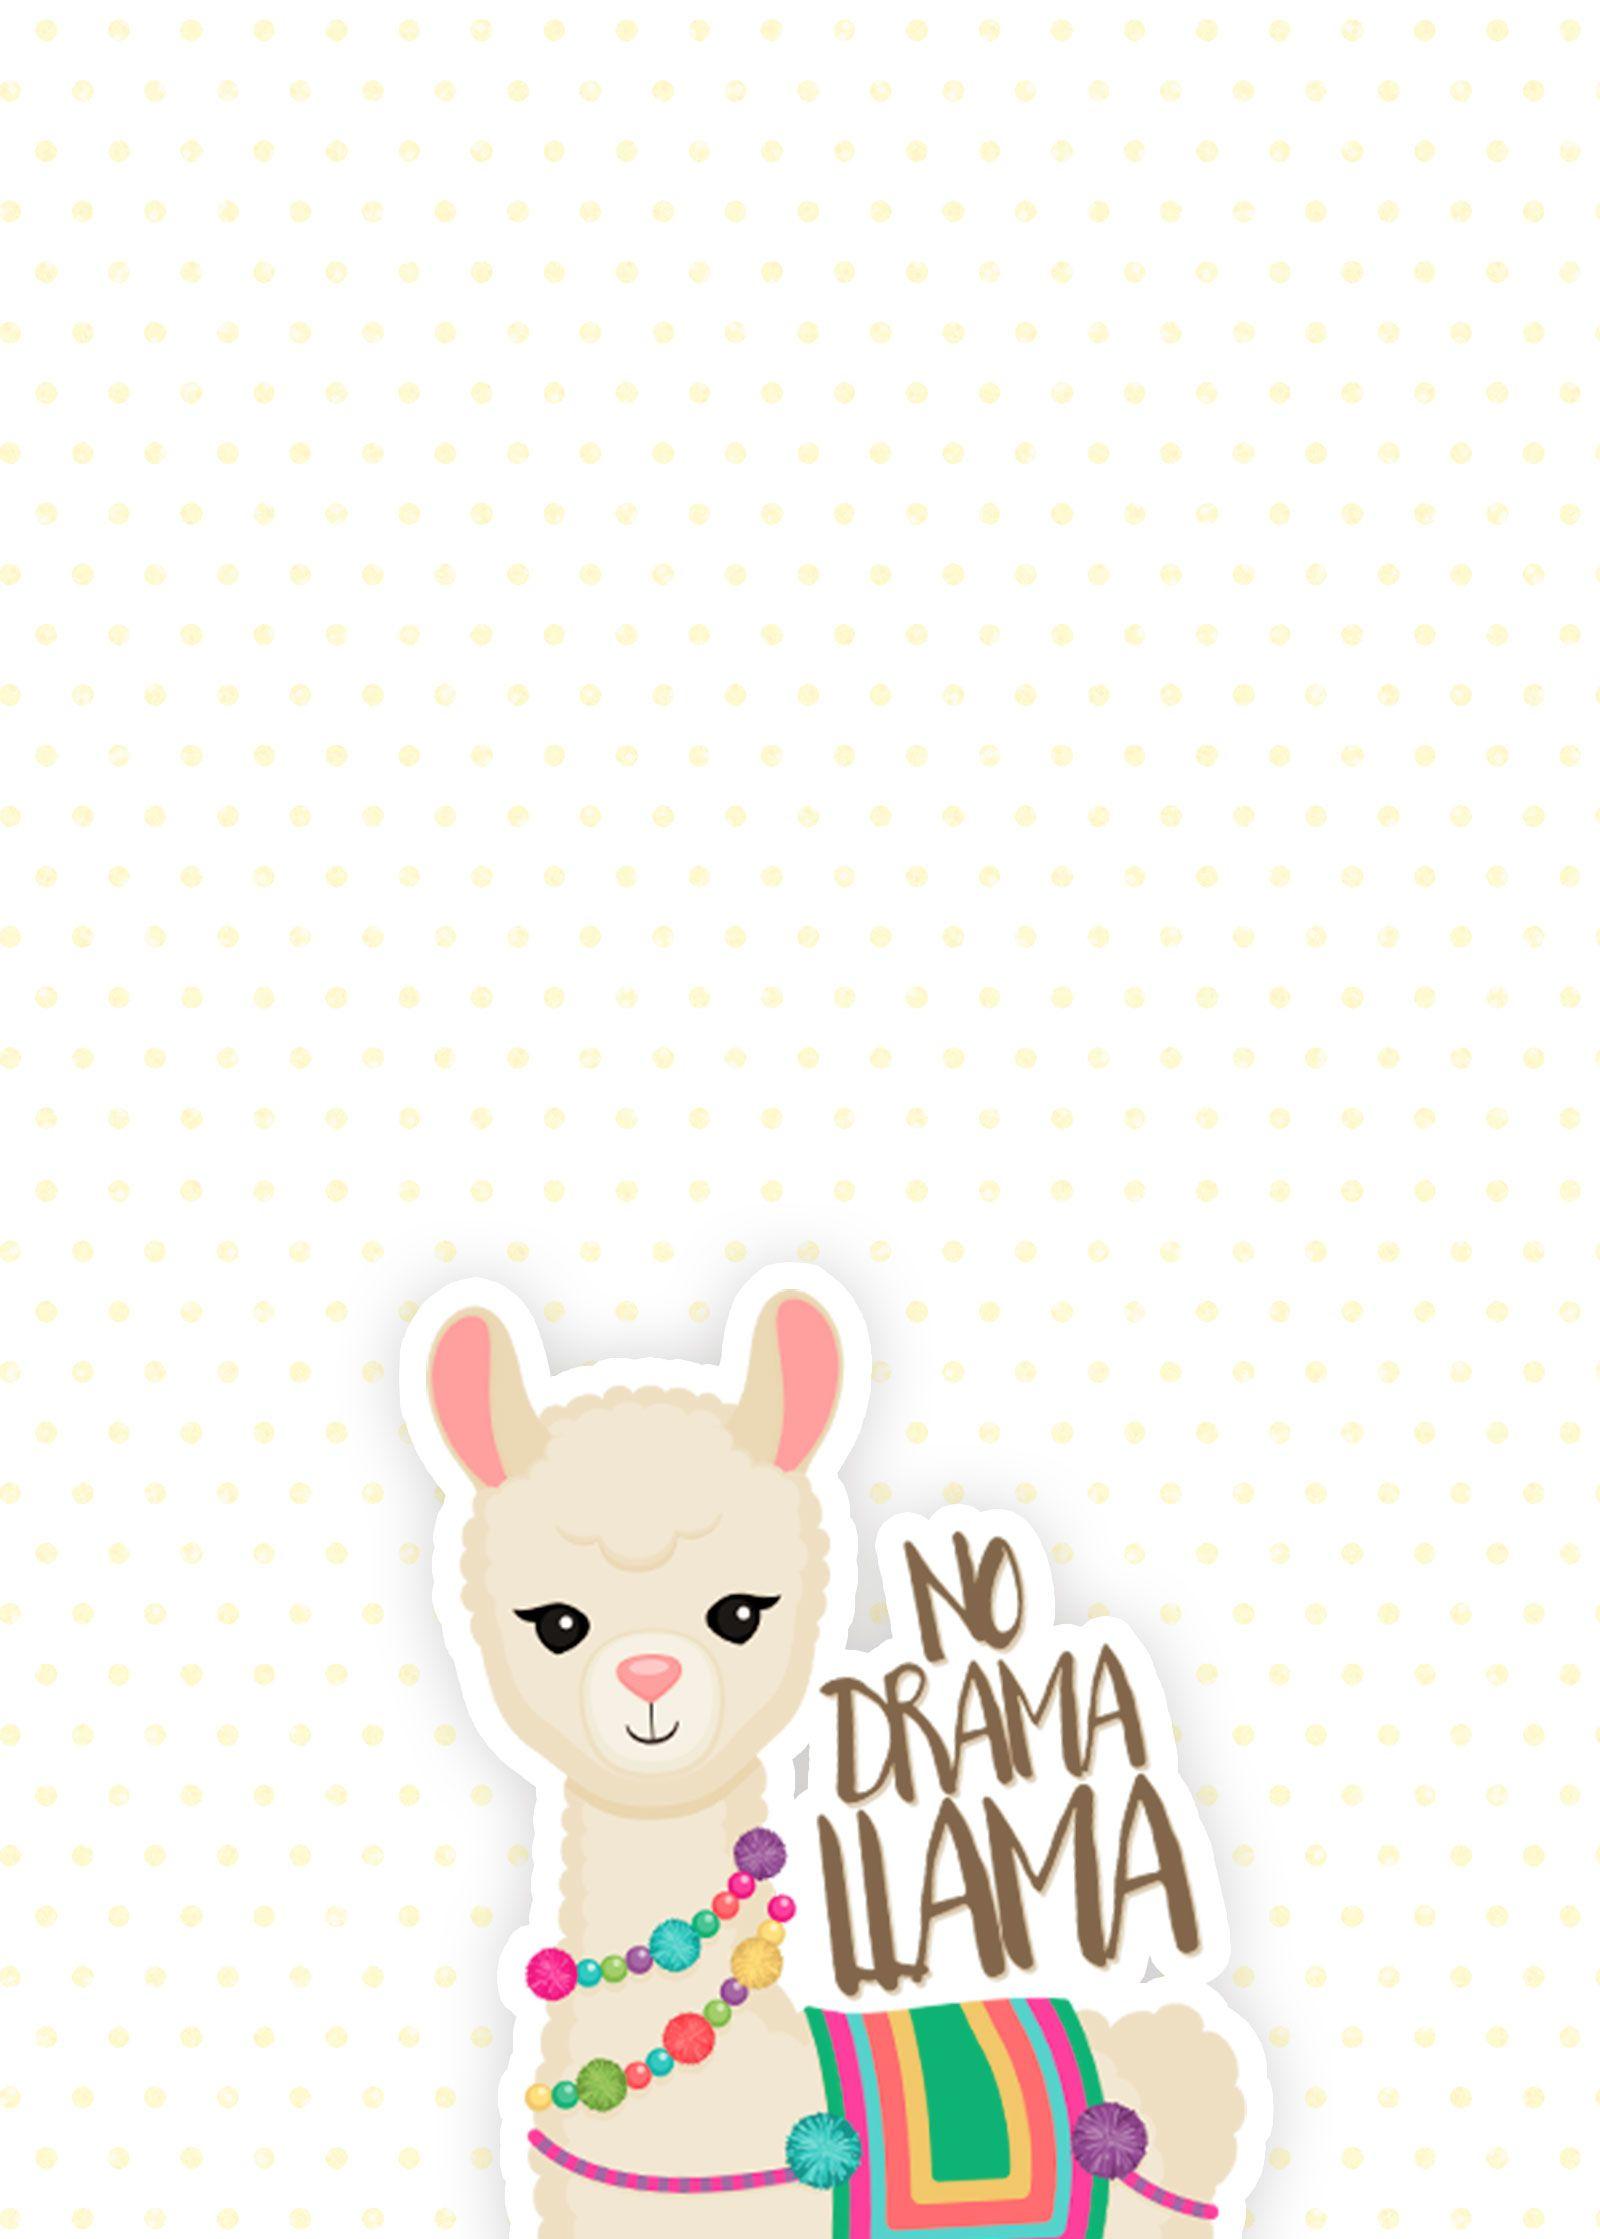 For the Love of Llamas! 10 Cutesy Llama iPhone Wallpaper